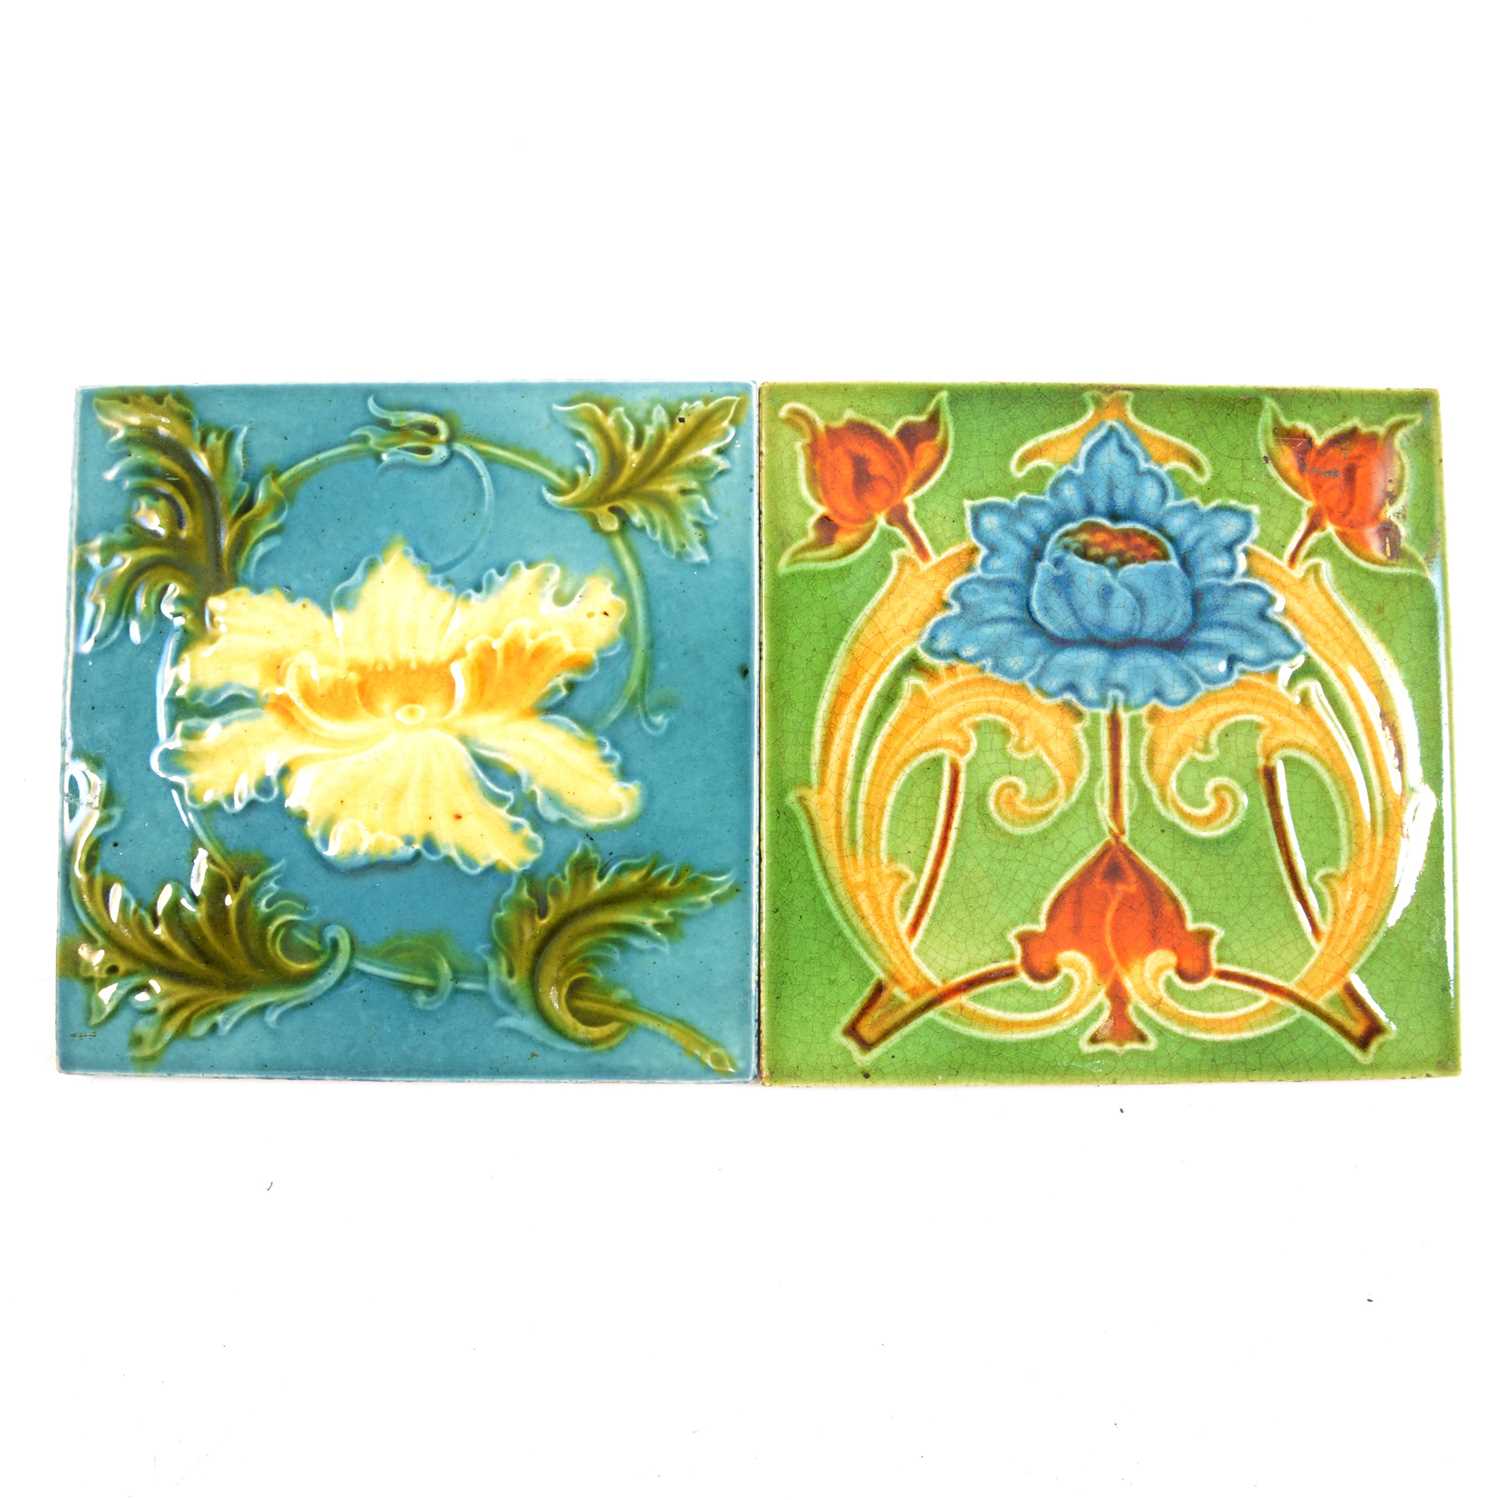 Lot 70 - Two British Art Nouveau pottery tiles